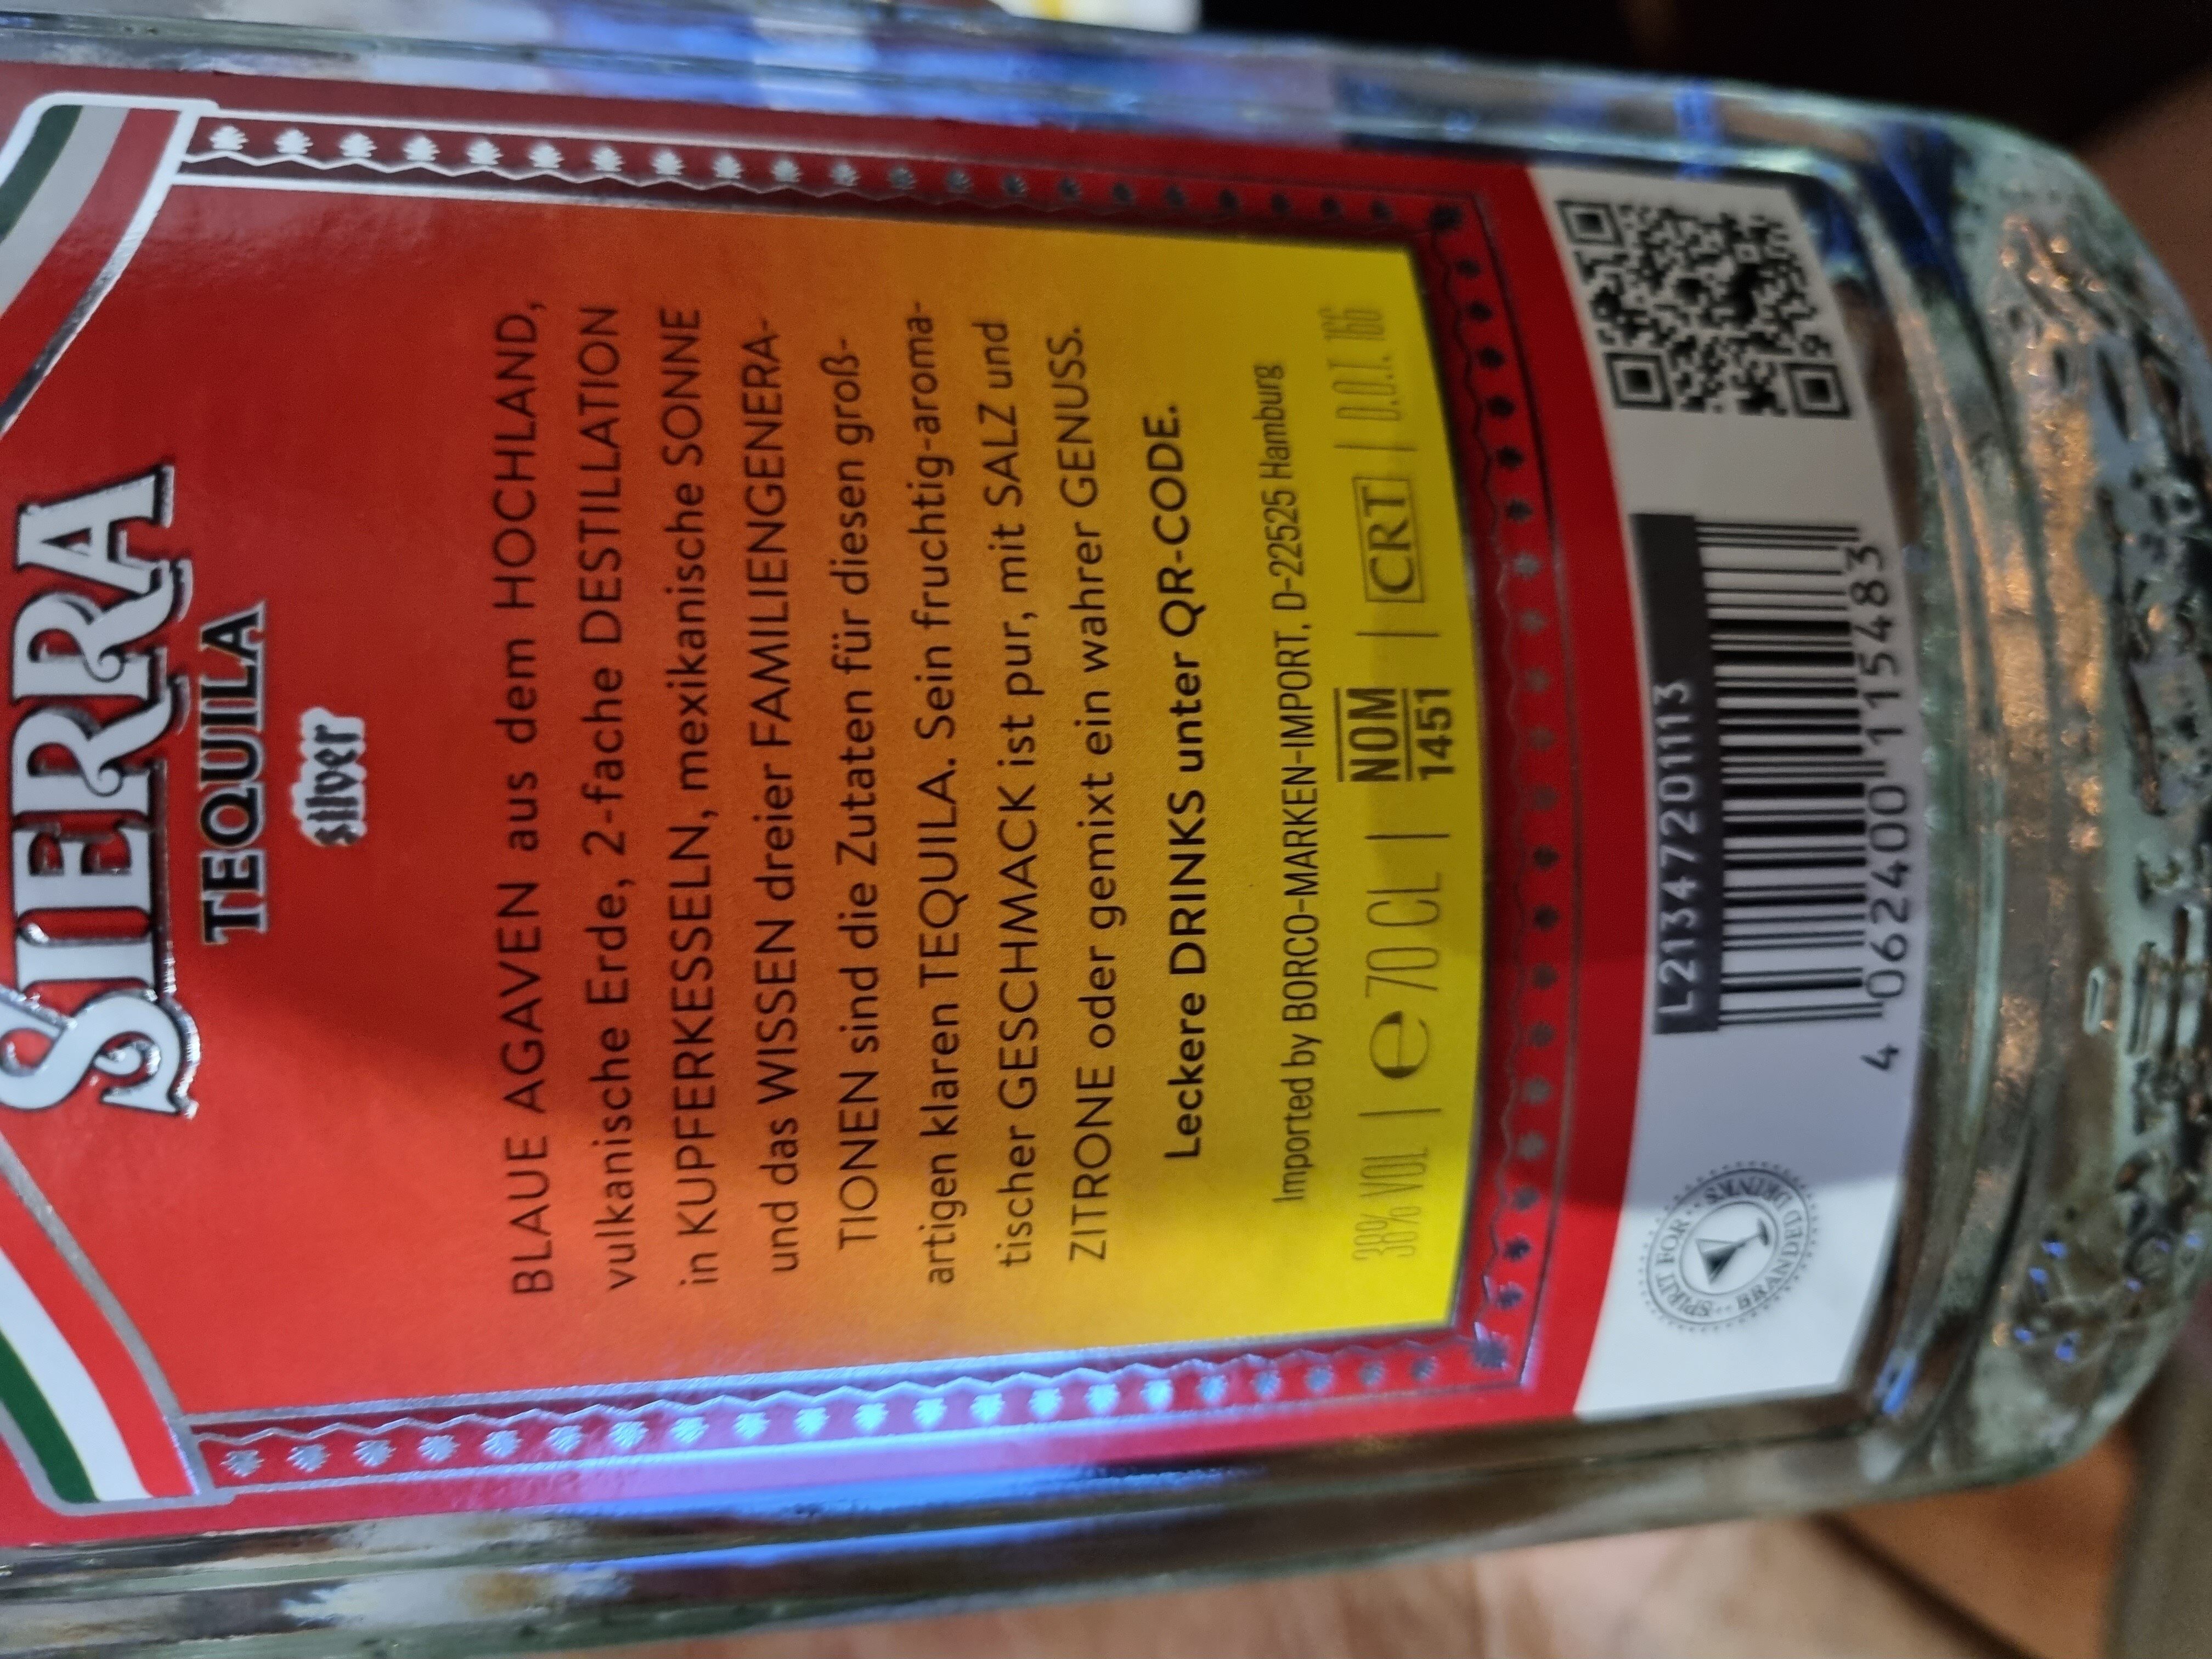 Sierra Tequila - Ingredients